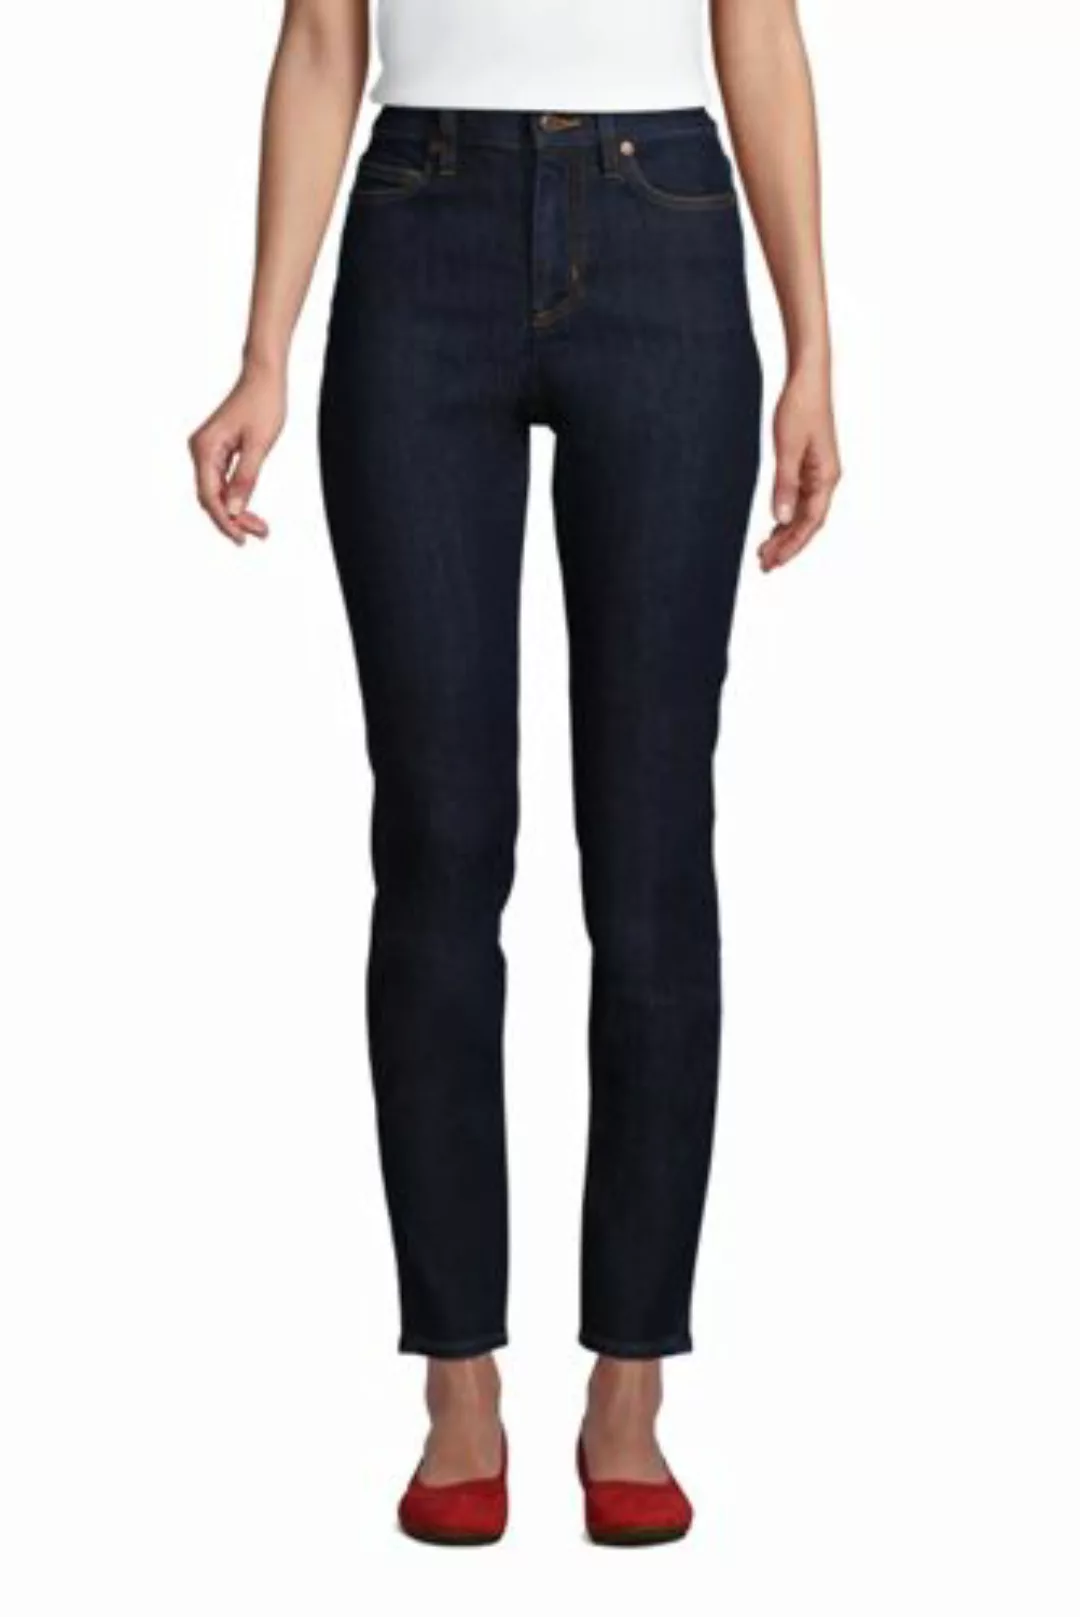 Slim Fit Öko Jeans High Waist, Damen, Größe: M Normal, Blau, Elasthan, by L günstig online kaufen